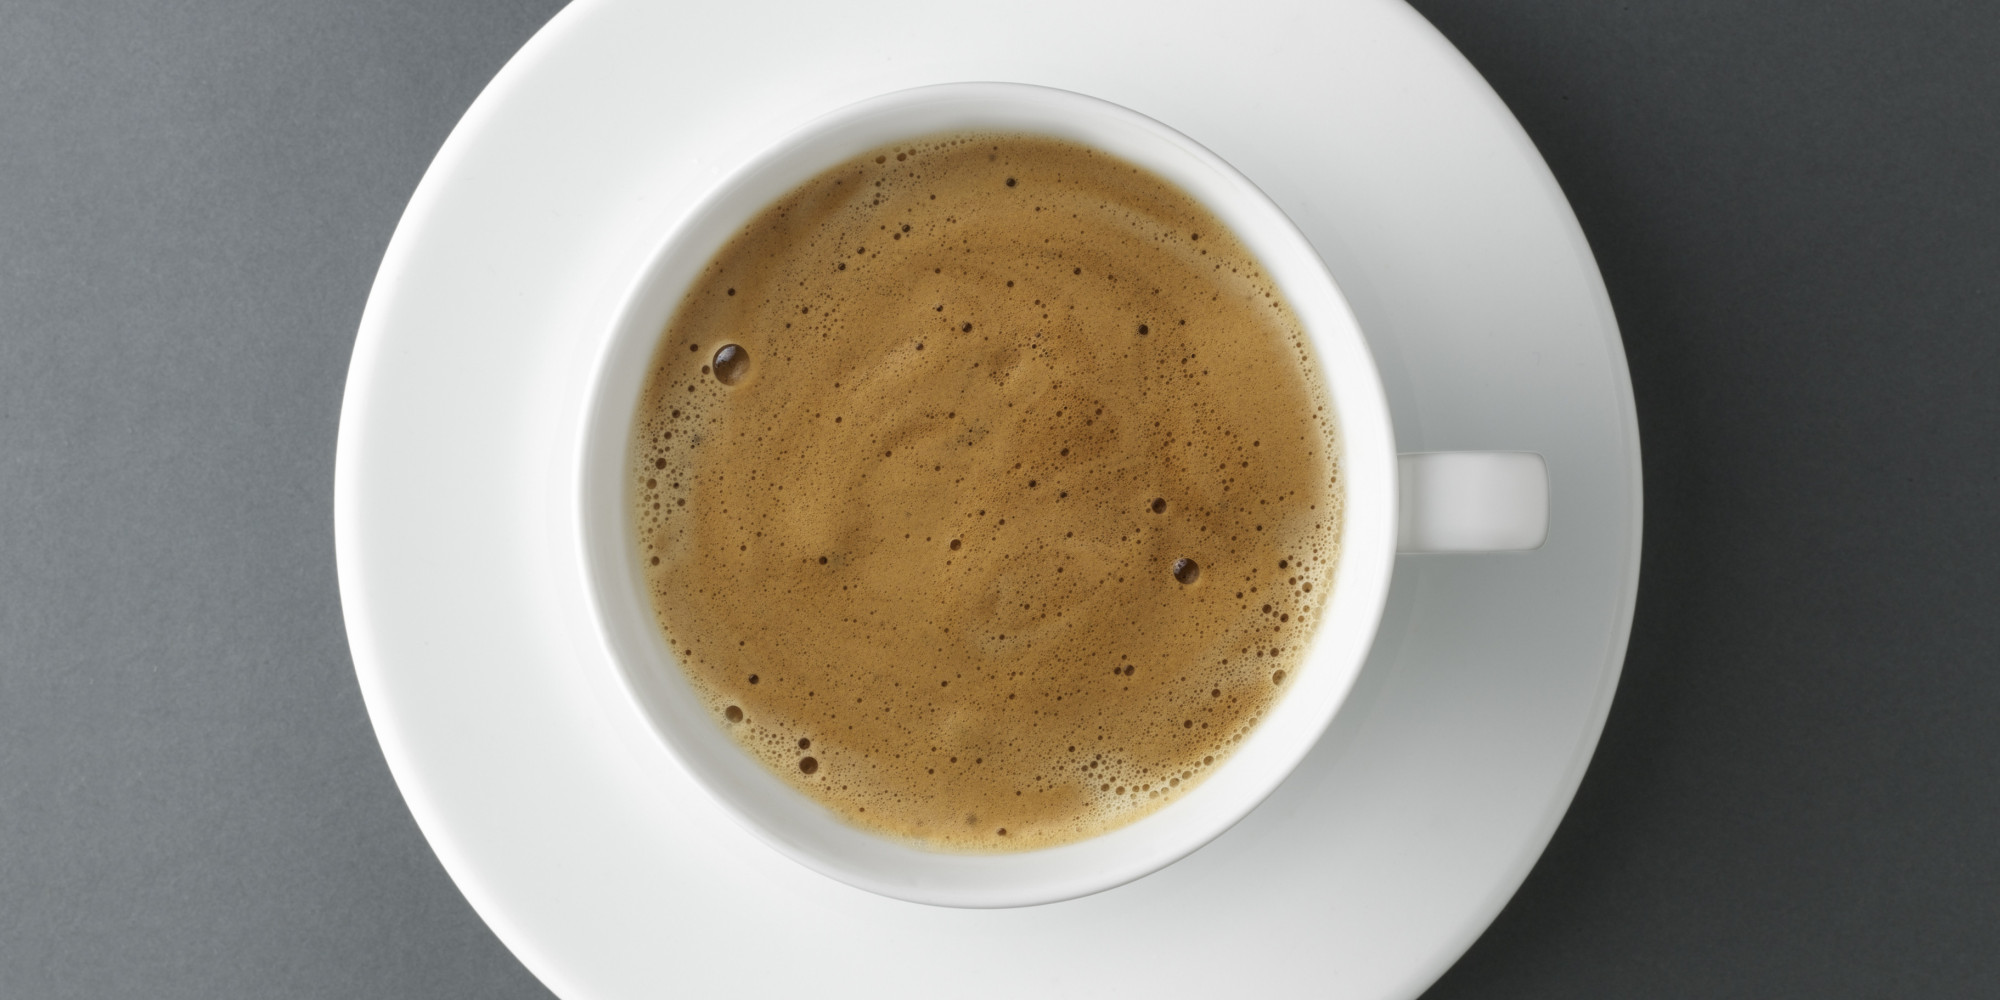 컵 색깔에 따라 커피 맛이 달라진다는 연구 결과가 나왔다